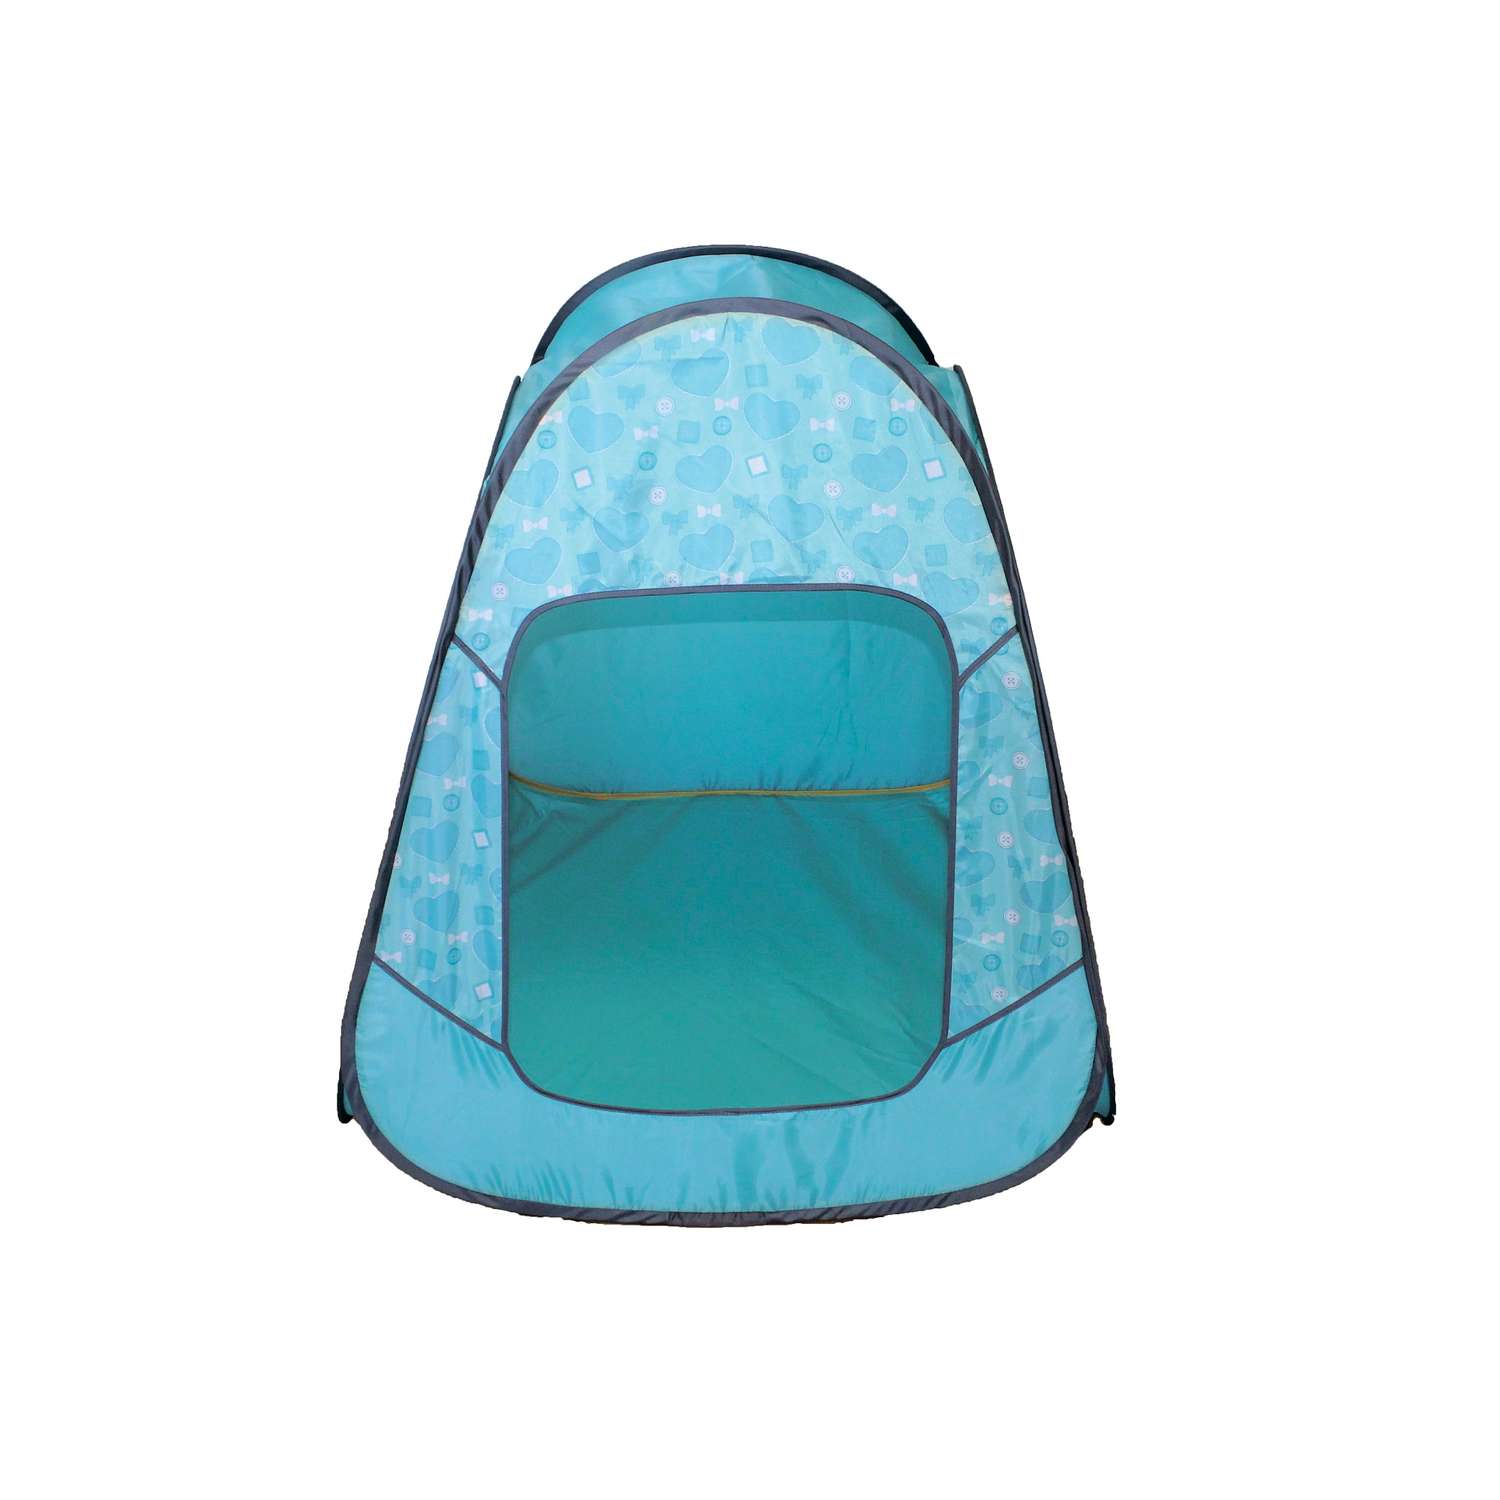 Палатка игровая Belon familia принт пуговицы на голубом - фото 2